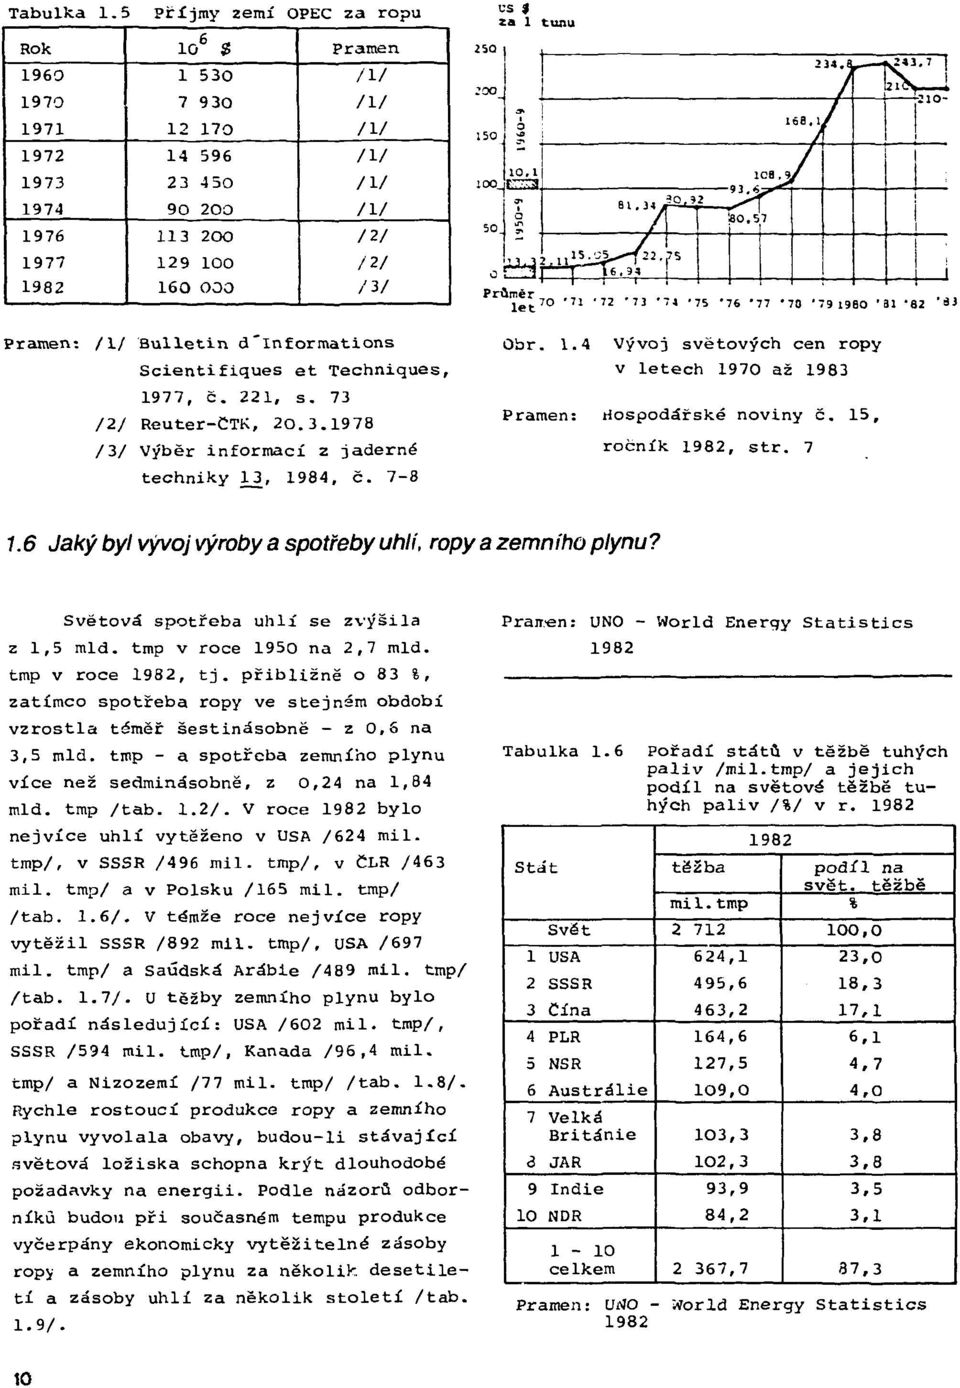 US $ za 1 tunu Pramen: /l/ Bulletin d"informations Scientifiques et Techniques, 1977, č. 221, s. 73 /2/ Reuter-CTK, 20.3.1978 /3/ Výběr informací z jaderné techniky 13, 1984, č. 7-8 Obr. 1.4 Vývoj světových cen ropy v letech 1970 až 1983 Pramen: Hospodářské noviny č.